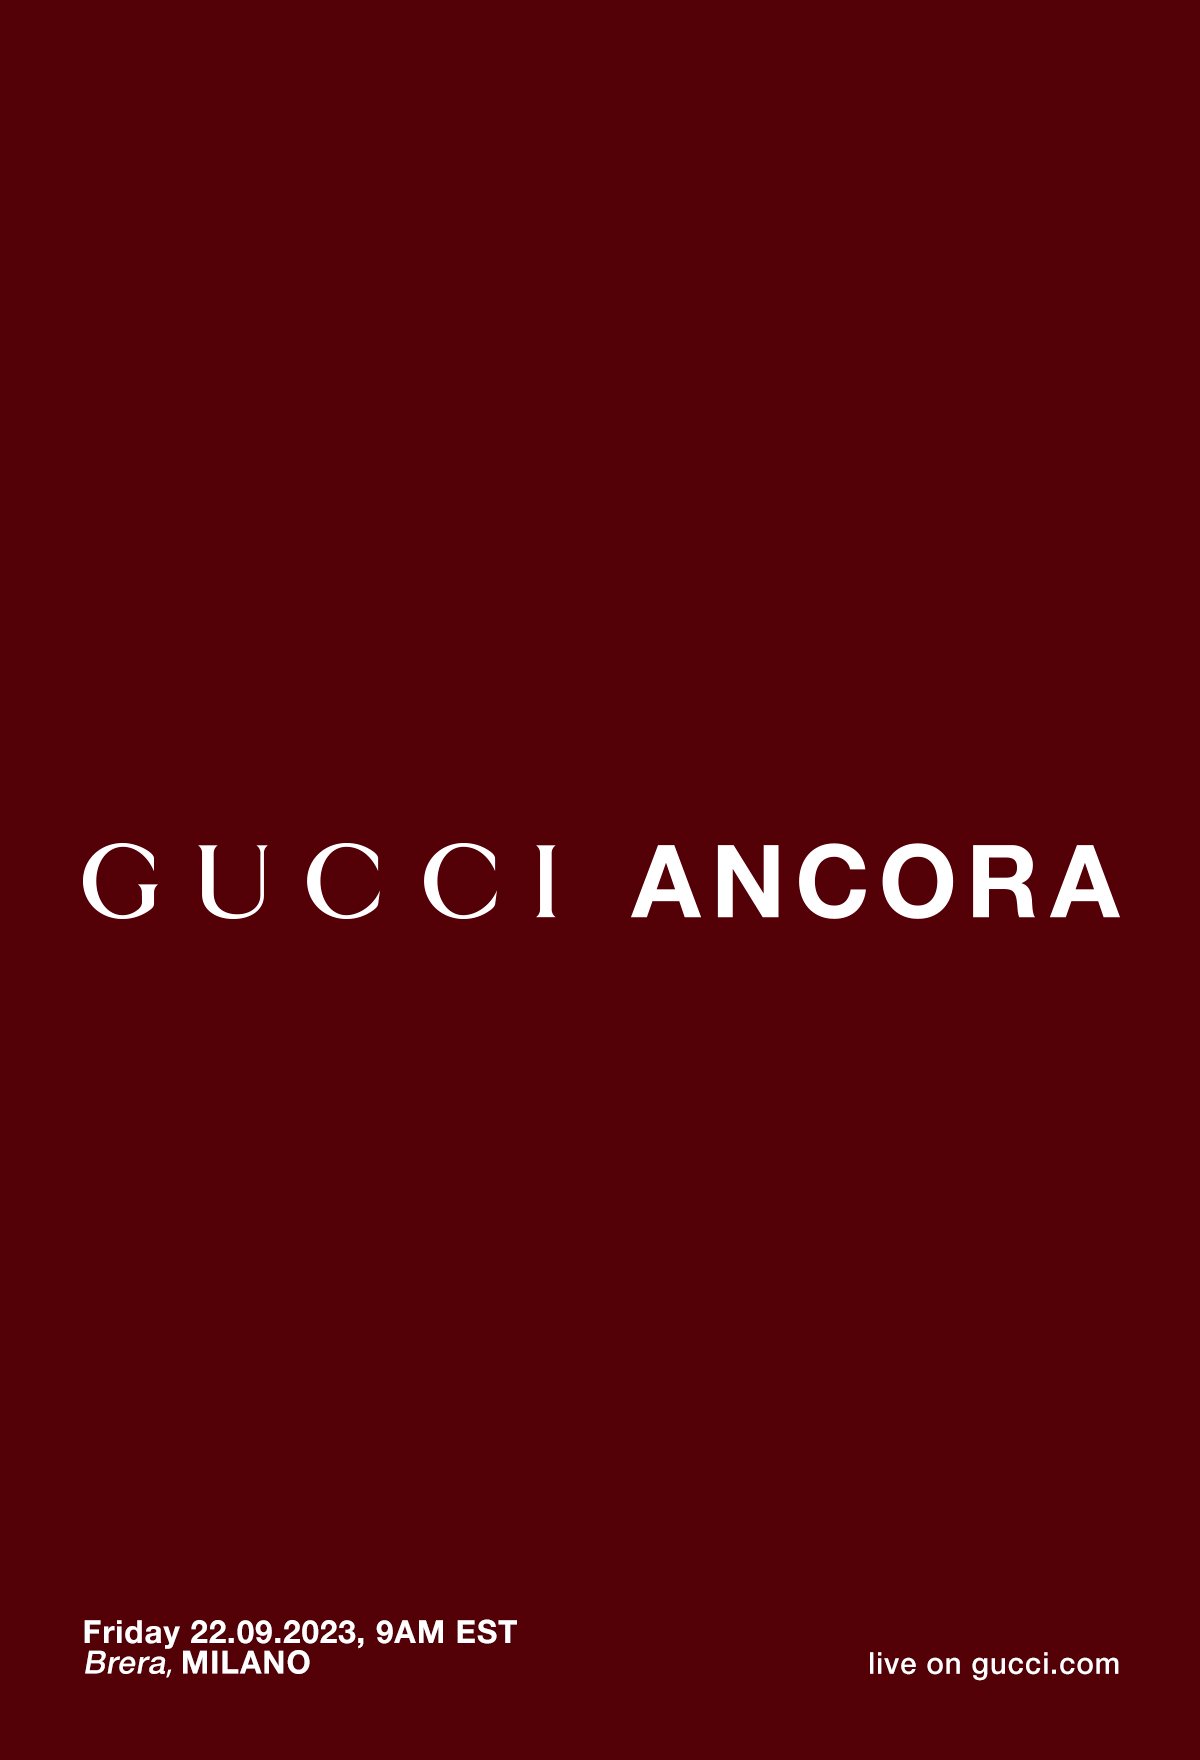 Gucci Ancora